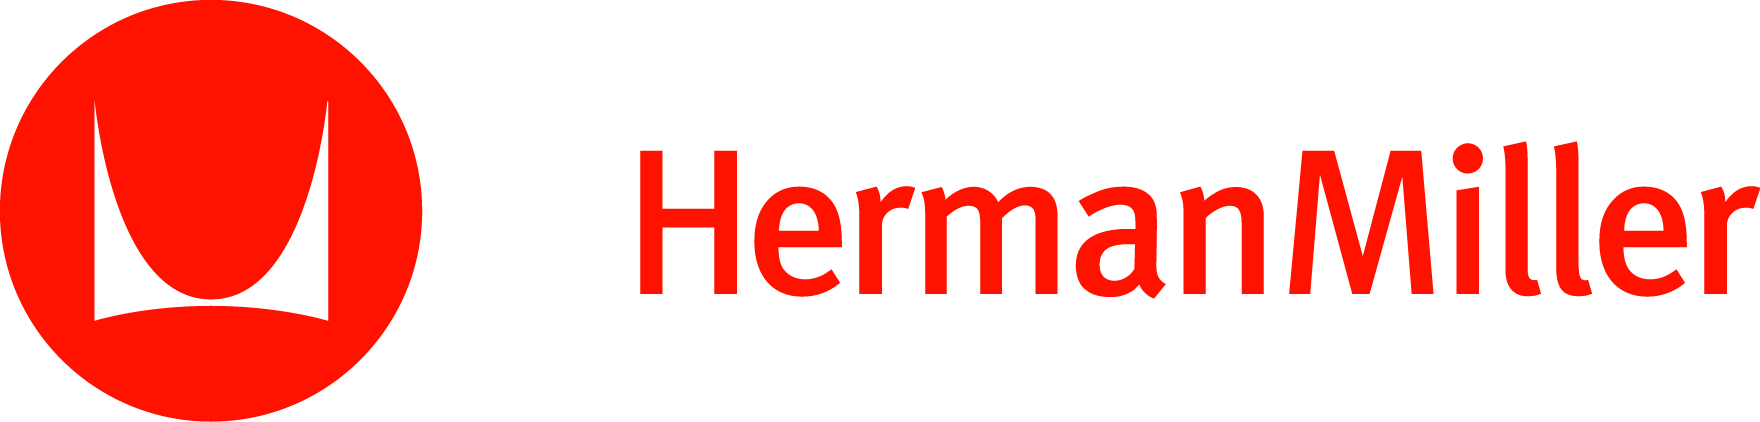 herman-miller-logo